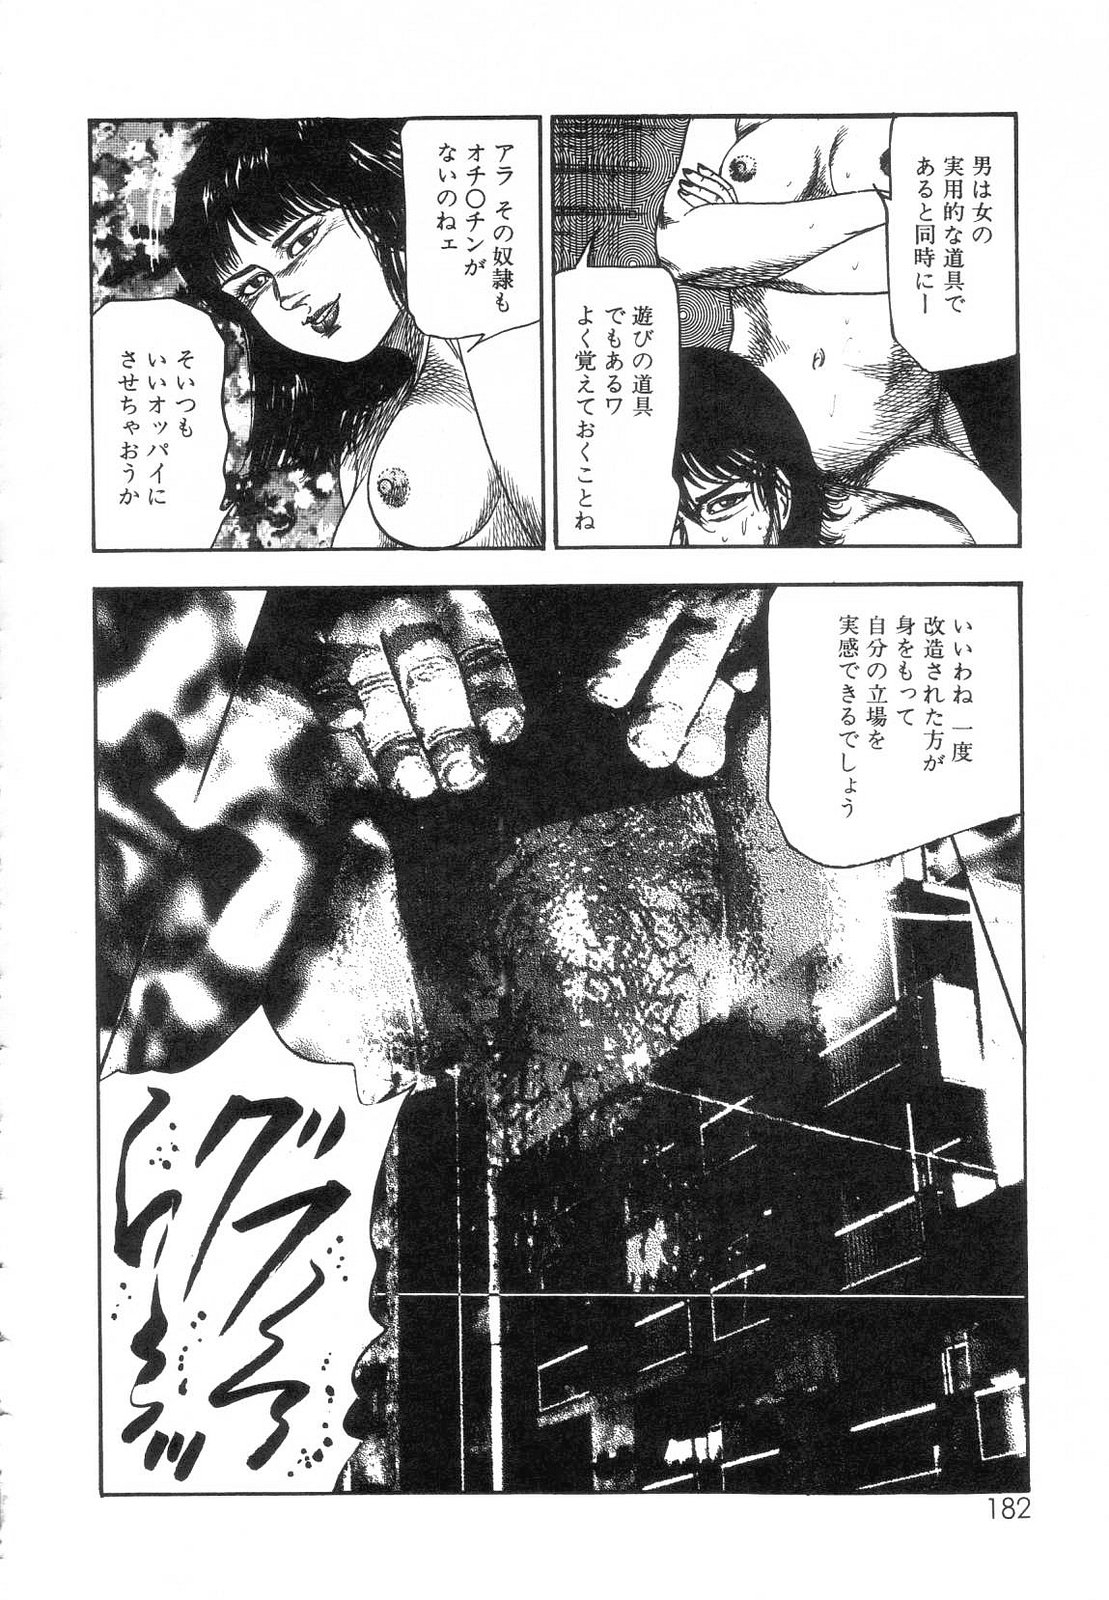 [Sanjou Tomomi] Shiro no Mokushiroku Vol. 7 - Shiiku Ningyou Erika no Shou 183